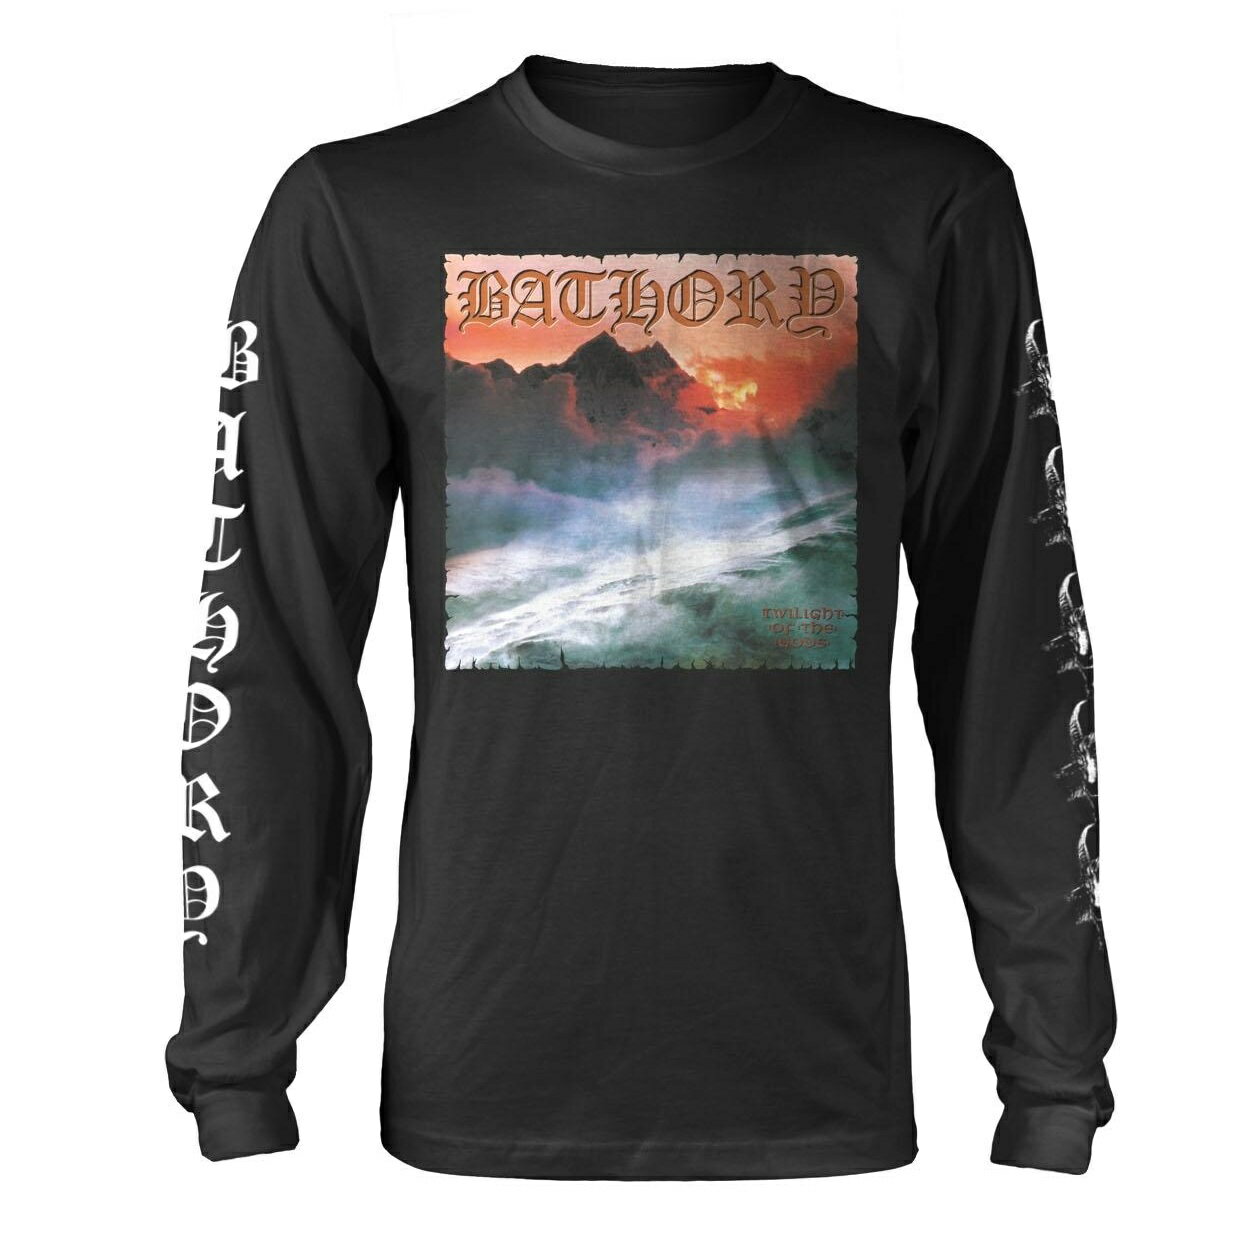 (バソリー) Bathory オフィシャル商品 ユニセックス Twilight Of The Gods Tシャツ 長袖トップス 【海外通販】